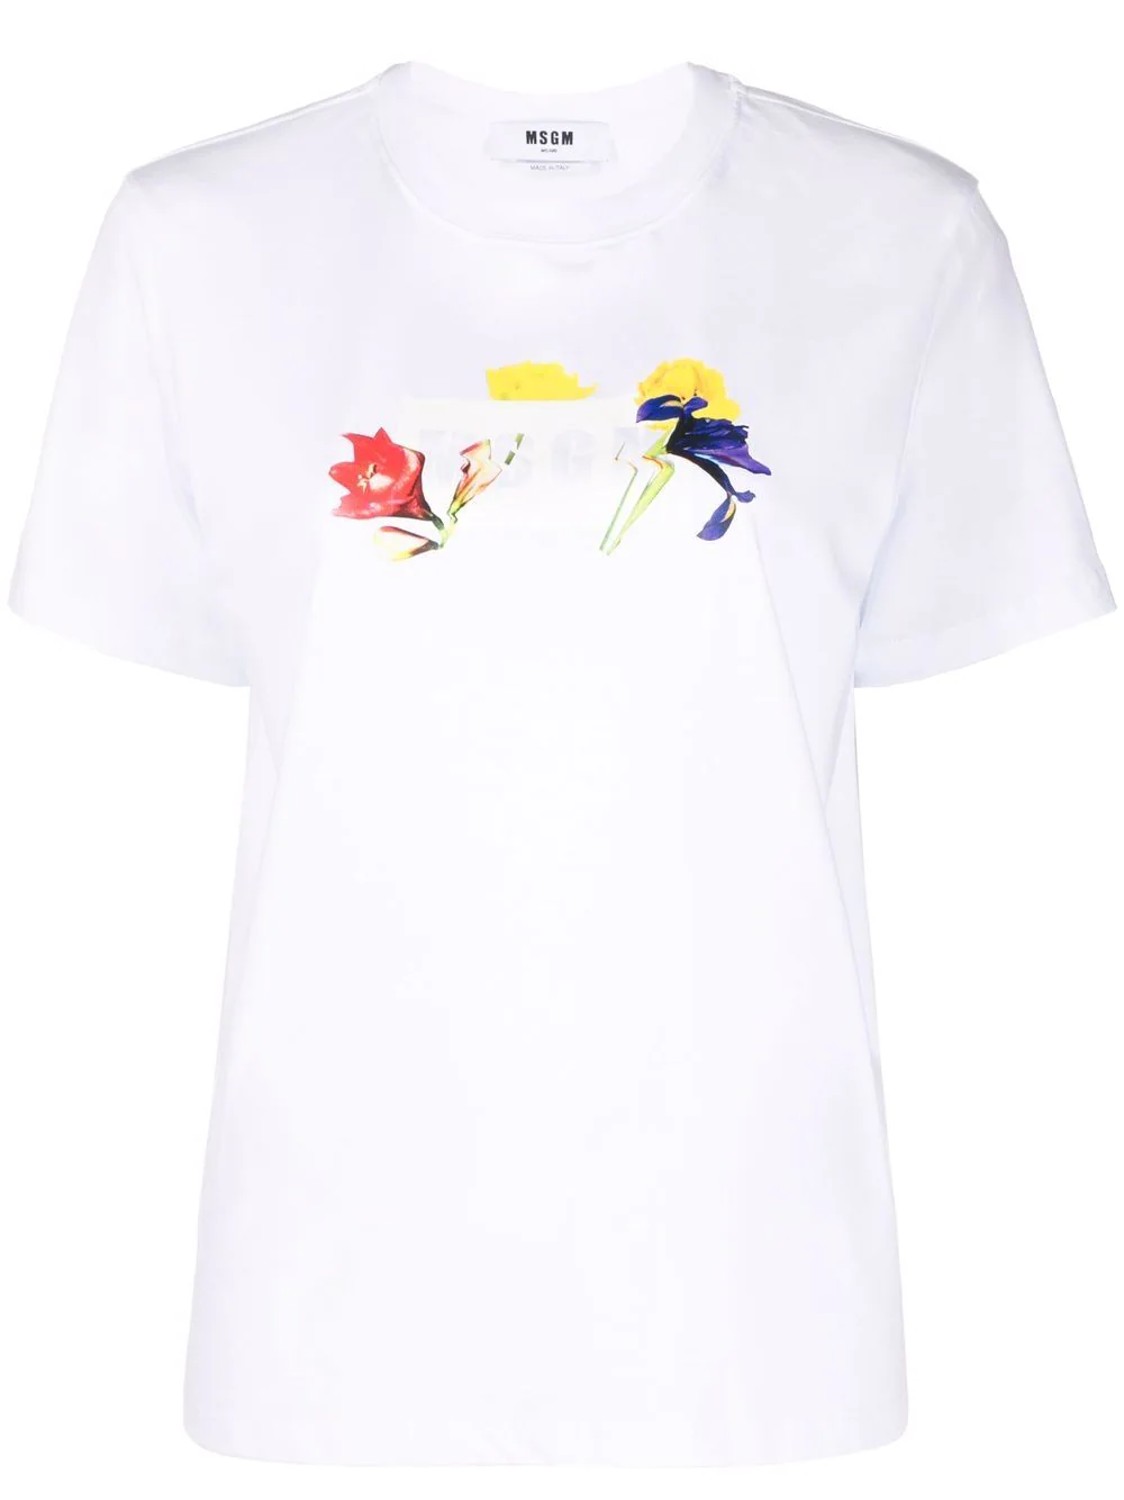 shop MSGM  T-shirts: T-shirts MSGM, manica corta, girocollo, fit regolare, logo disegnato frontale.

Composizione: 100% cotone. number 2290